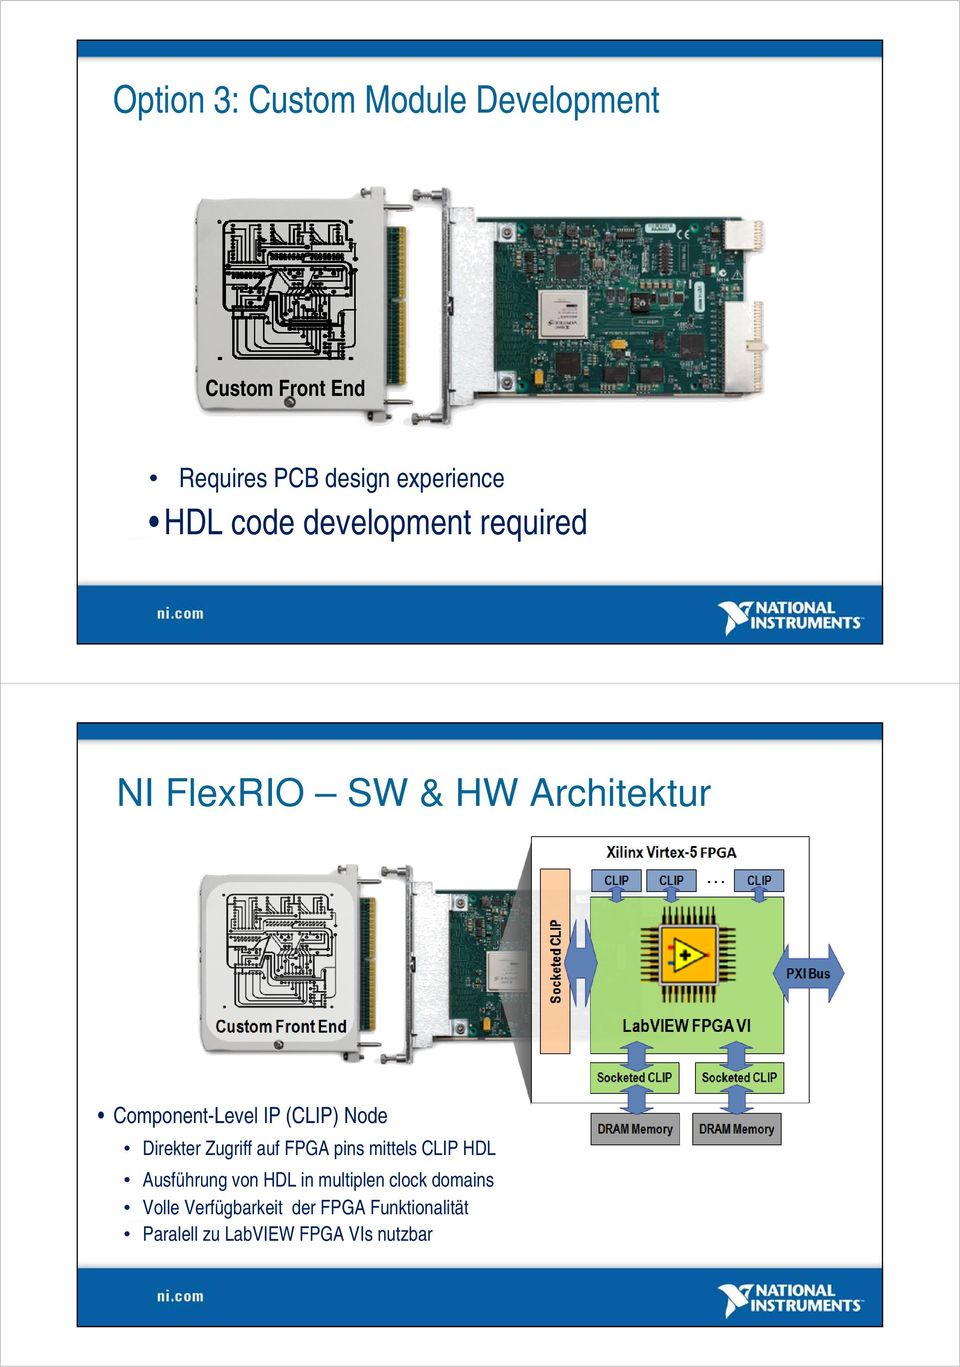 Direkter Zugriff auf FPGA pins mittels CLIP HDL Ausführung von HDL in multiplen clock